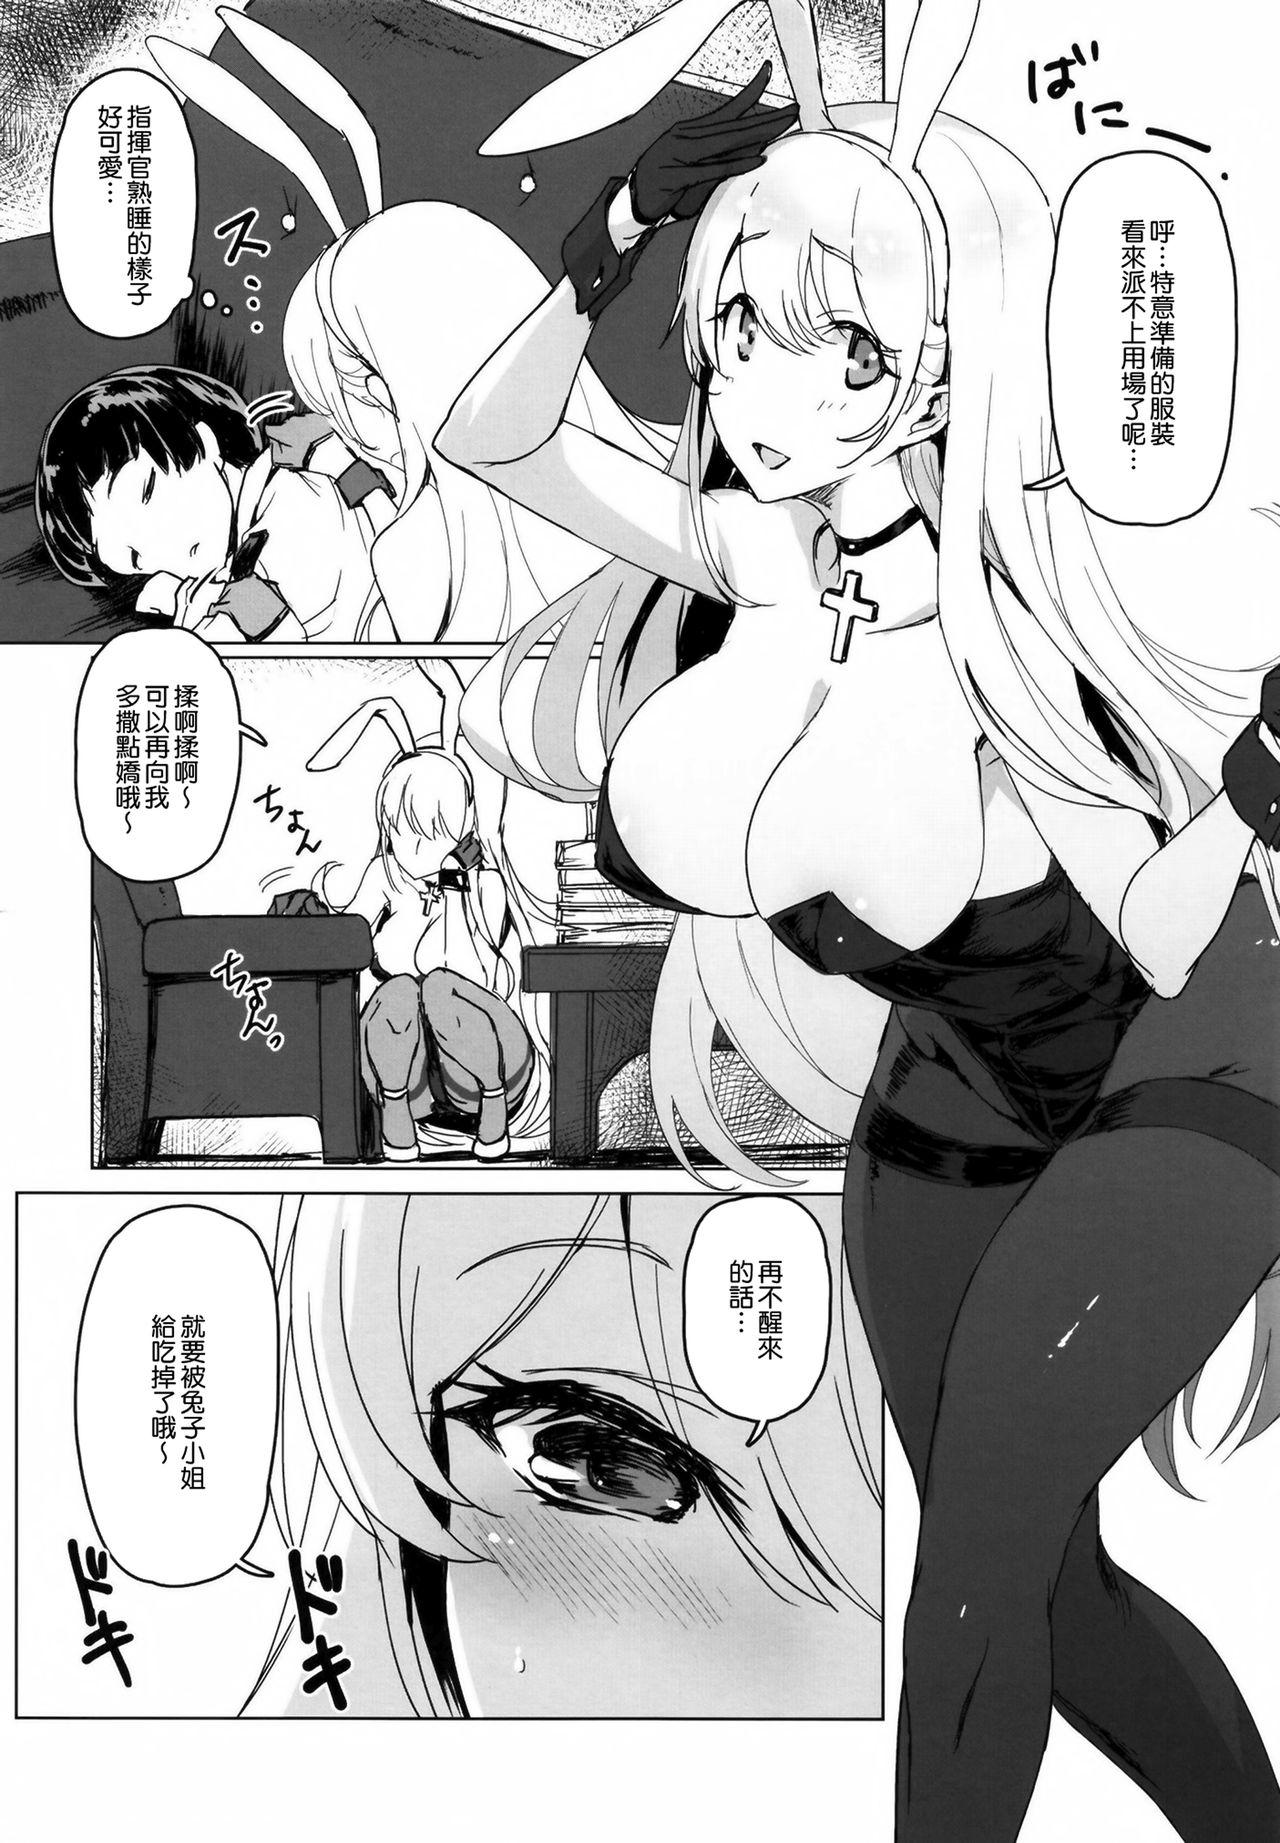 Nasty Free Porn Shota Shikikan wa Bunny Girl Hishokan no Yume o Miru - Azur lane Realsex - Page 7